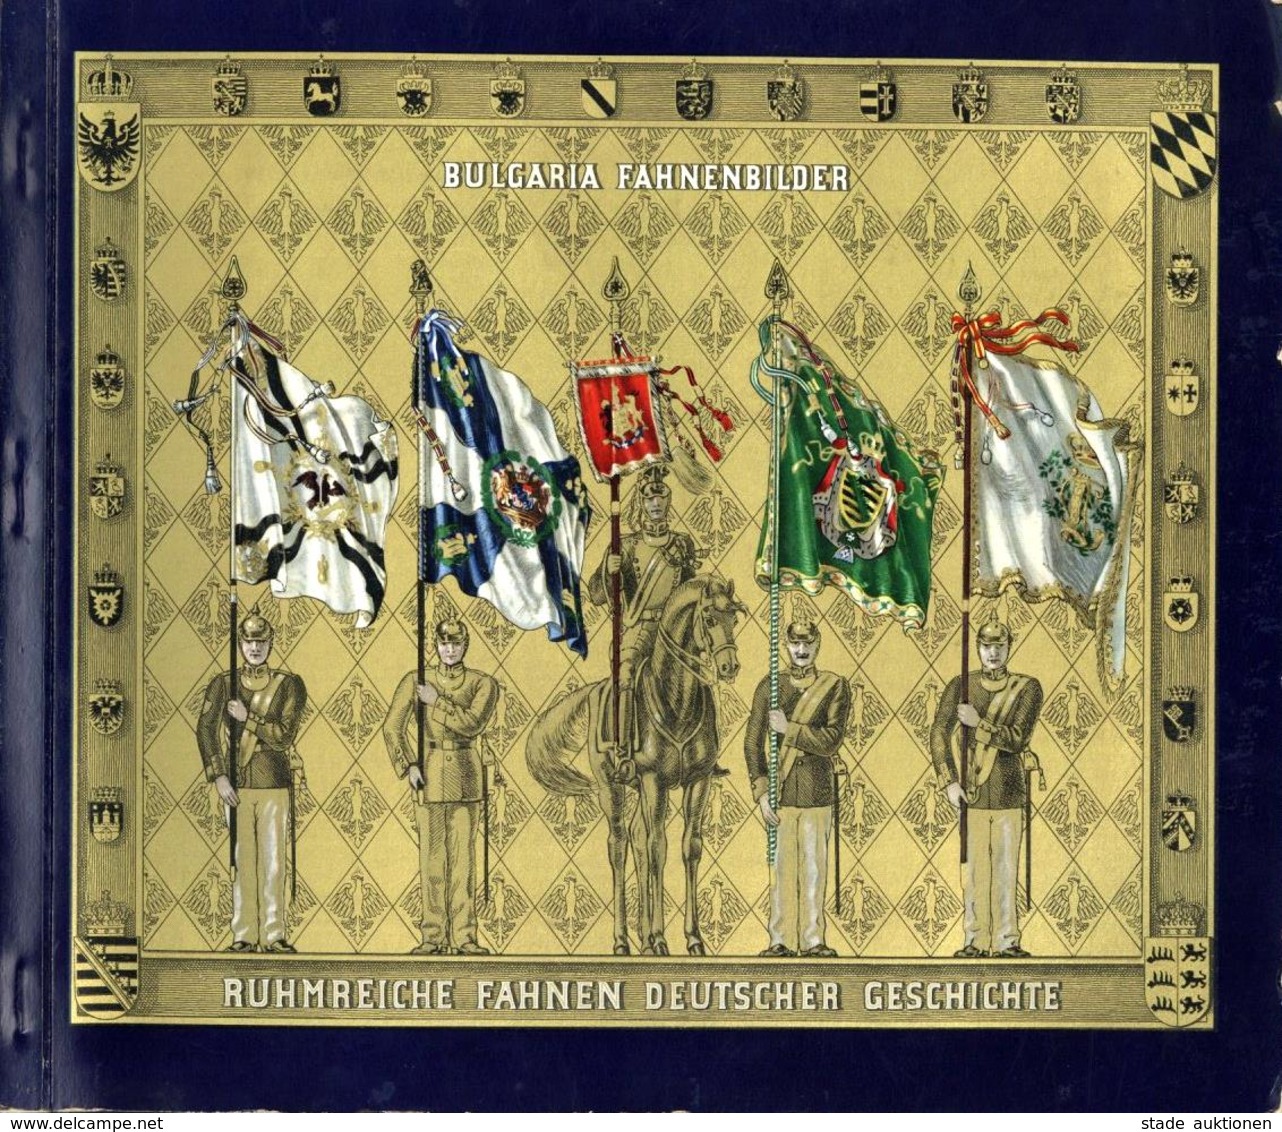 Sammelbild-Album Fahnenbilder Ruhmreiche Fahnen Deutscher Geschichte Ca. 1932 Bulgaria Zigarettenfabrik Kompl. II - Weltkrieg 1939-45